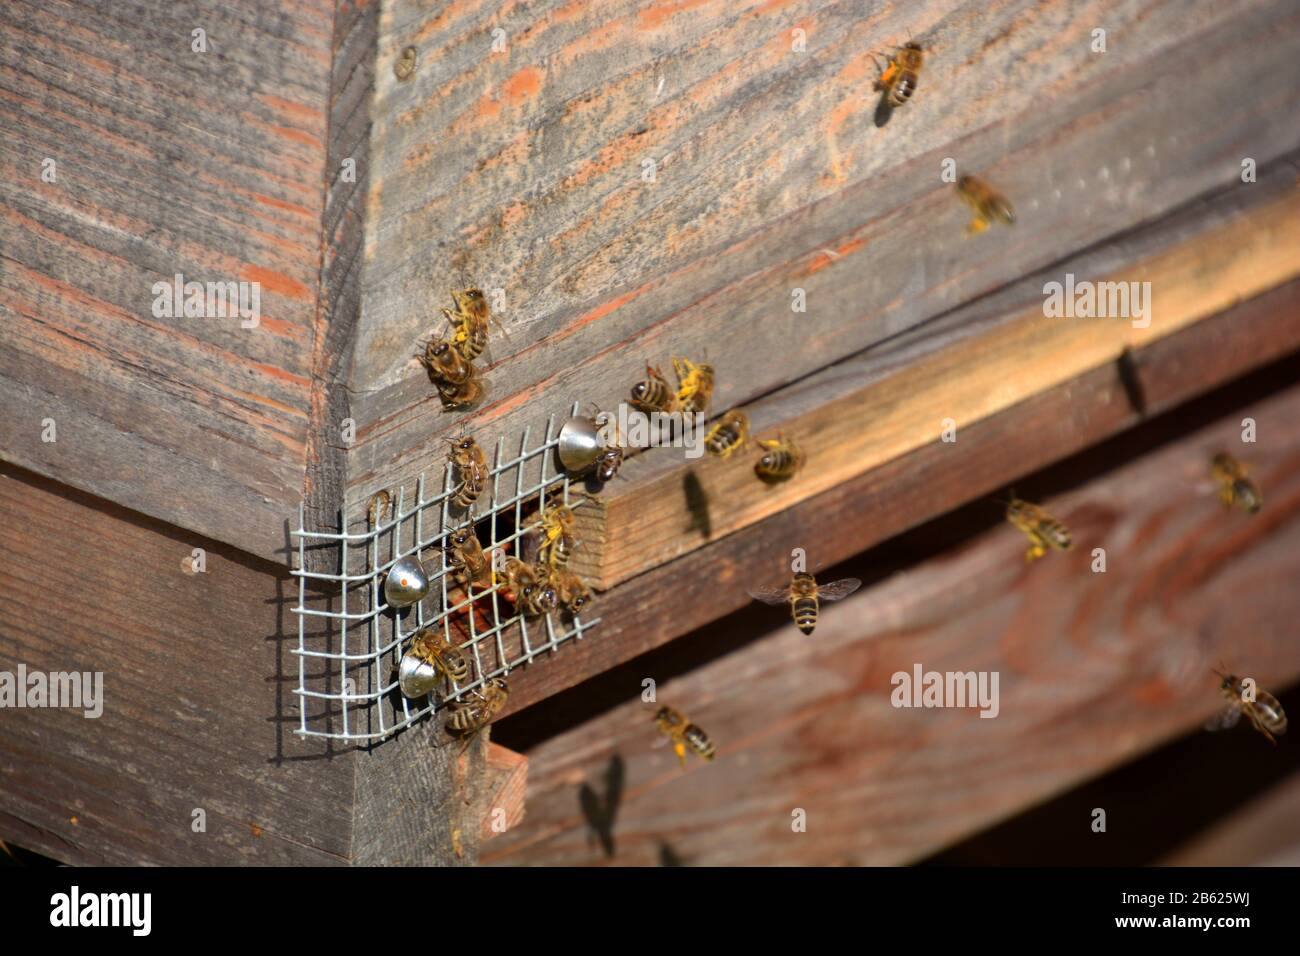 primo piano di api volanti vicino all'alveare con polline sulle gambe, macro di api con sacco di polline giallo Foto Stock